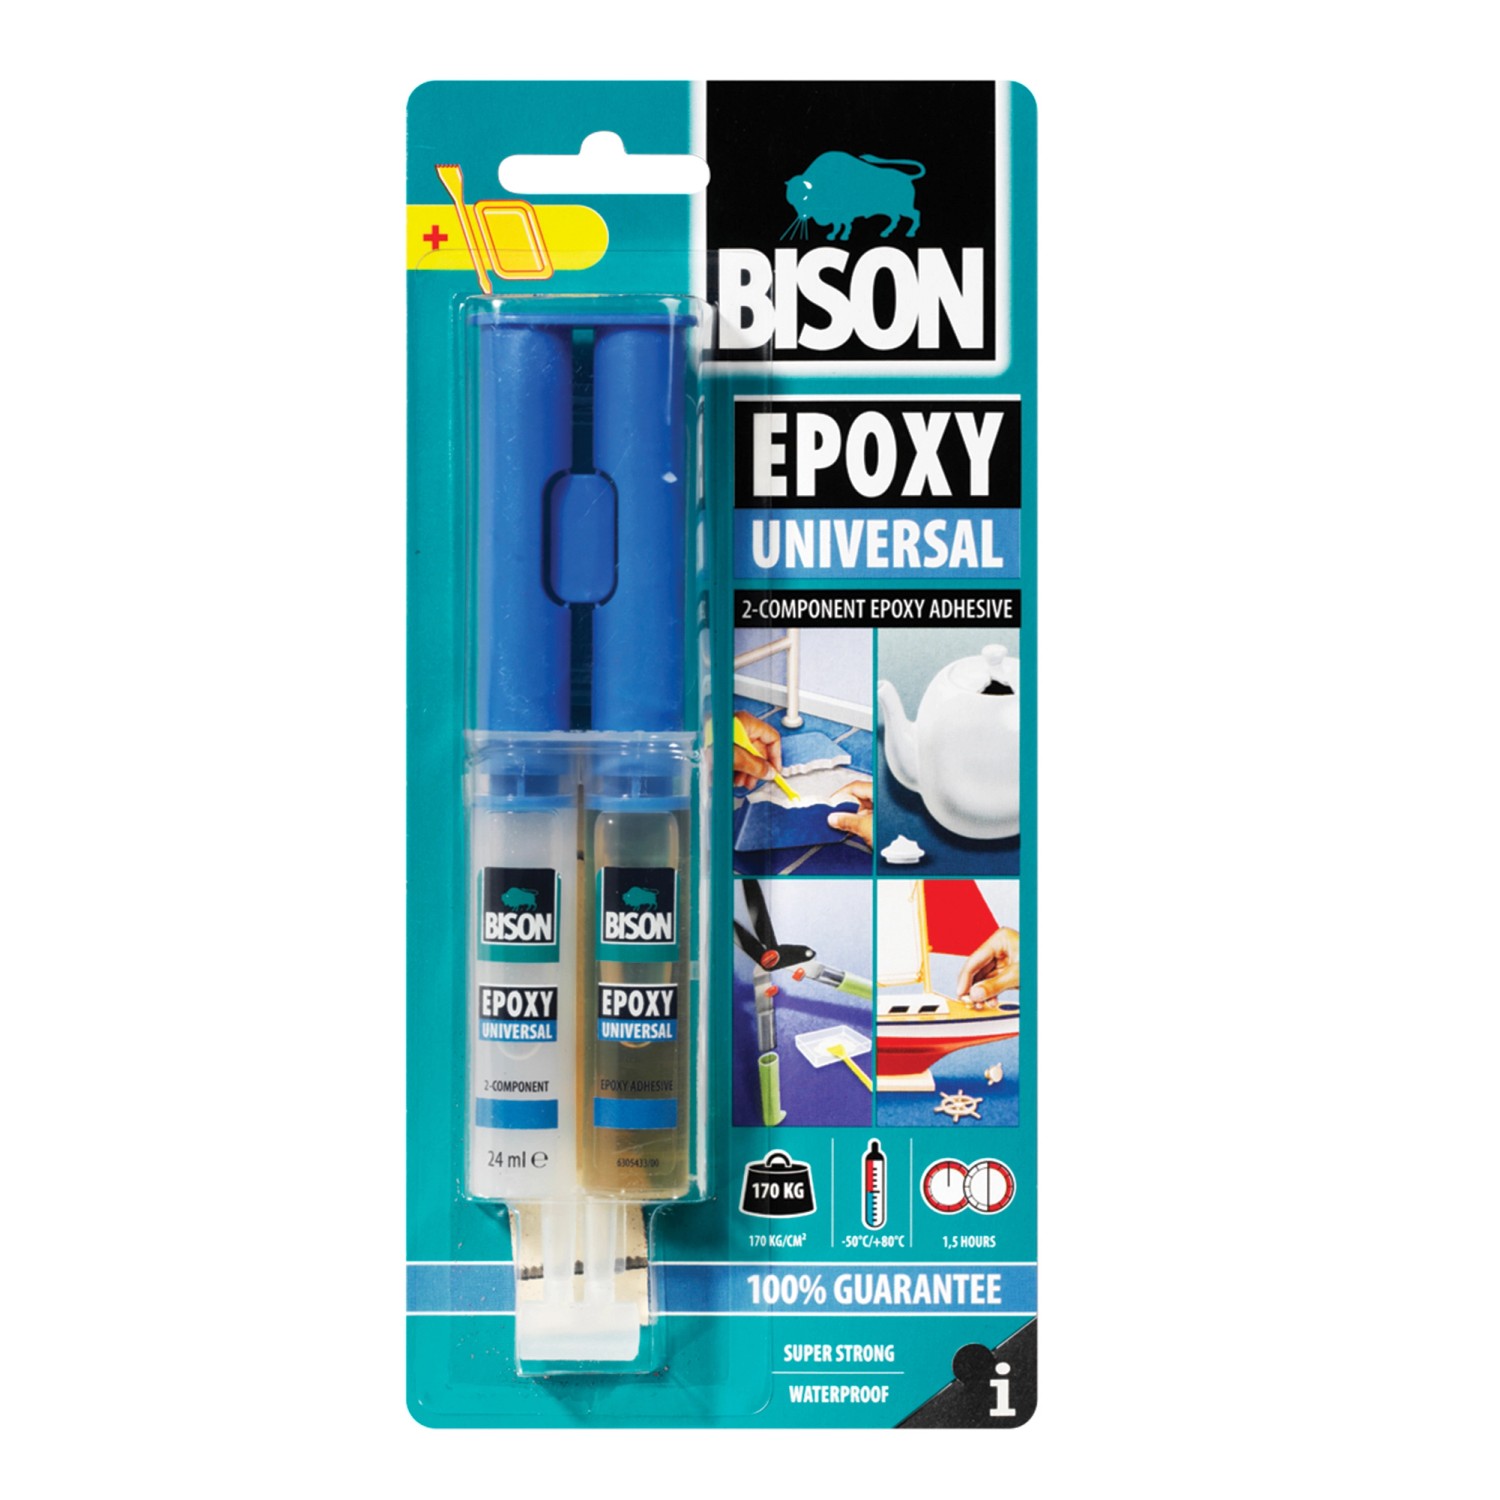 Эпоксидка двухкомпонентная. Клей эпоксидный Bison Epoxy 5. Bison Adhesive клей. Бизон двухкомпонентный эпоксидный клей. Клей Epoxy Repair универсальный Bison.